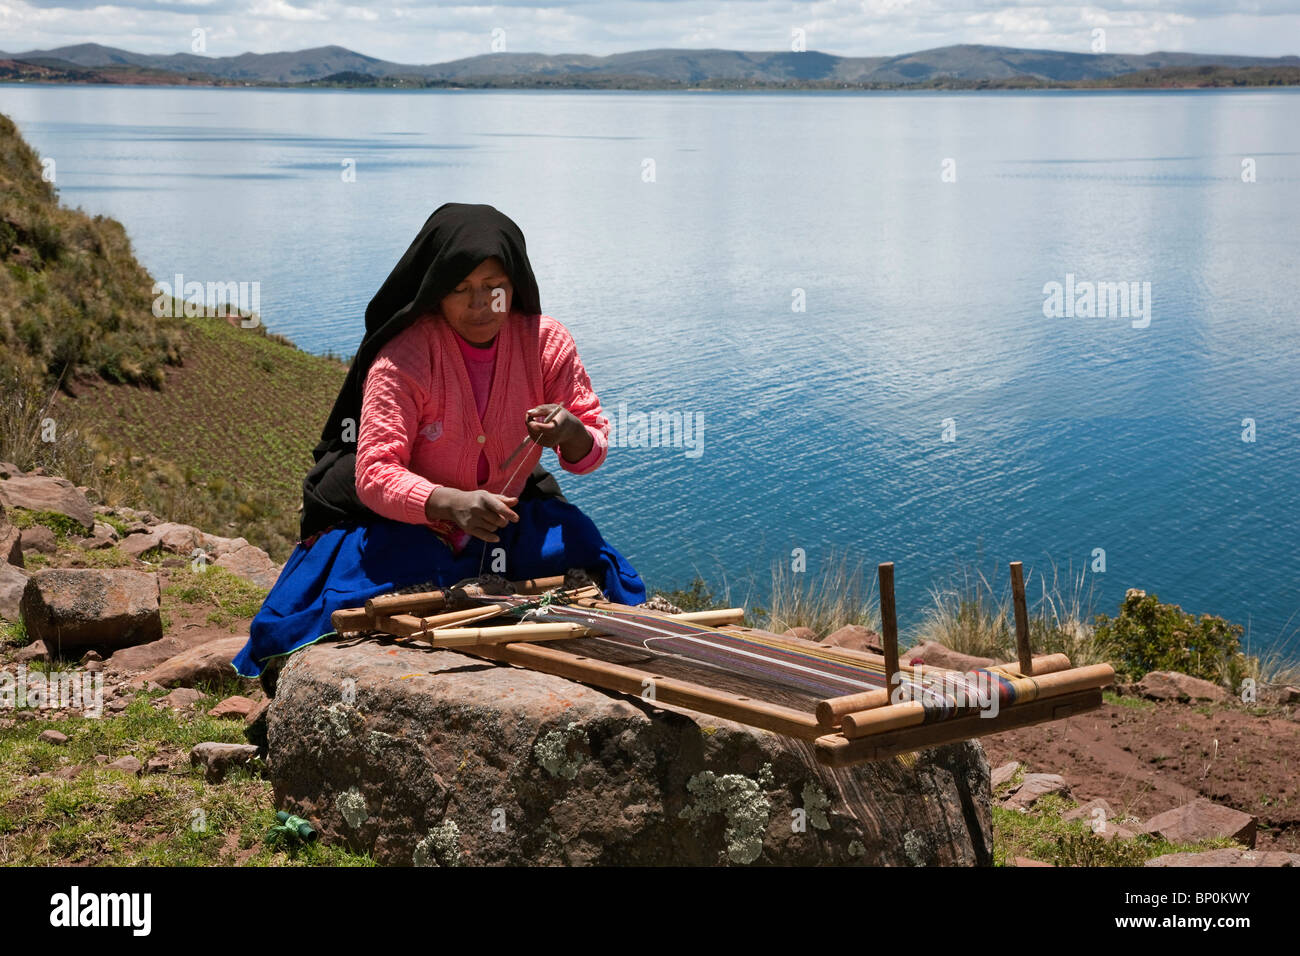 Le Pérou, une femme parlant Quechua travaille son métier traditionnel en bois sur l'île de Taquile. Banque D'Images